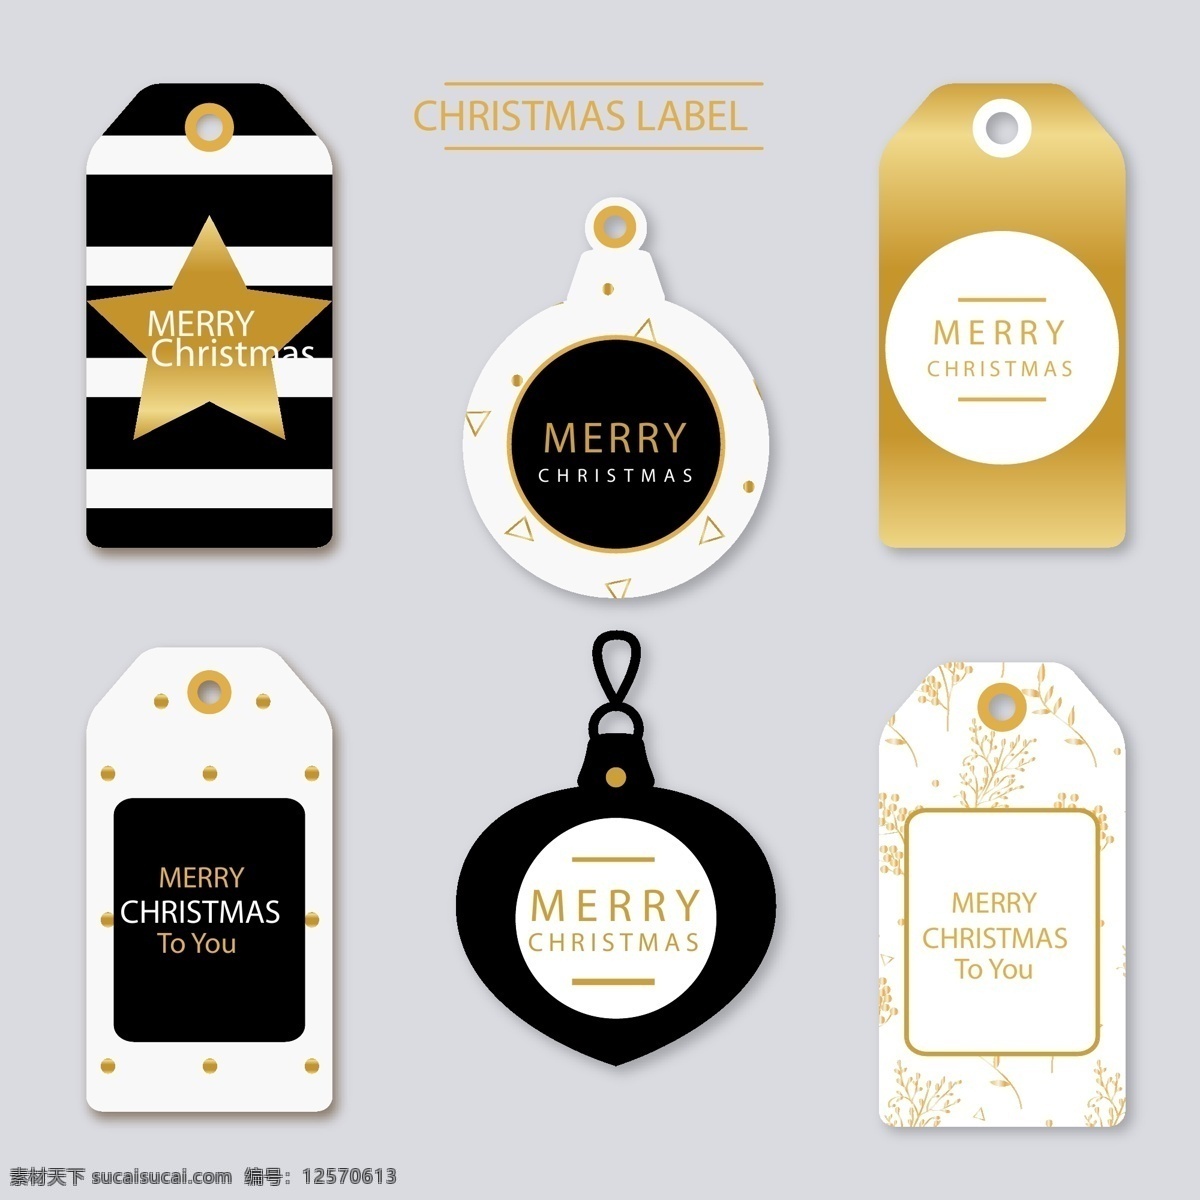 时尚 精美 圣诞 标签 星星 圣诞节 矢量素材 英文 标签设计 ai素材